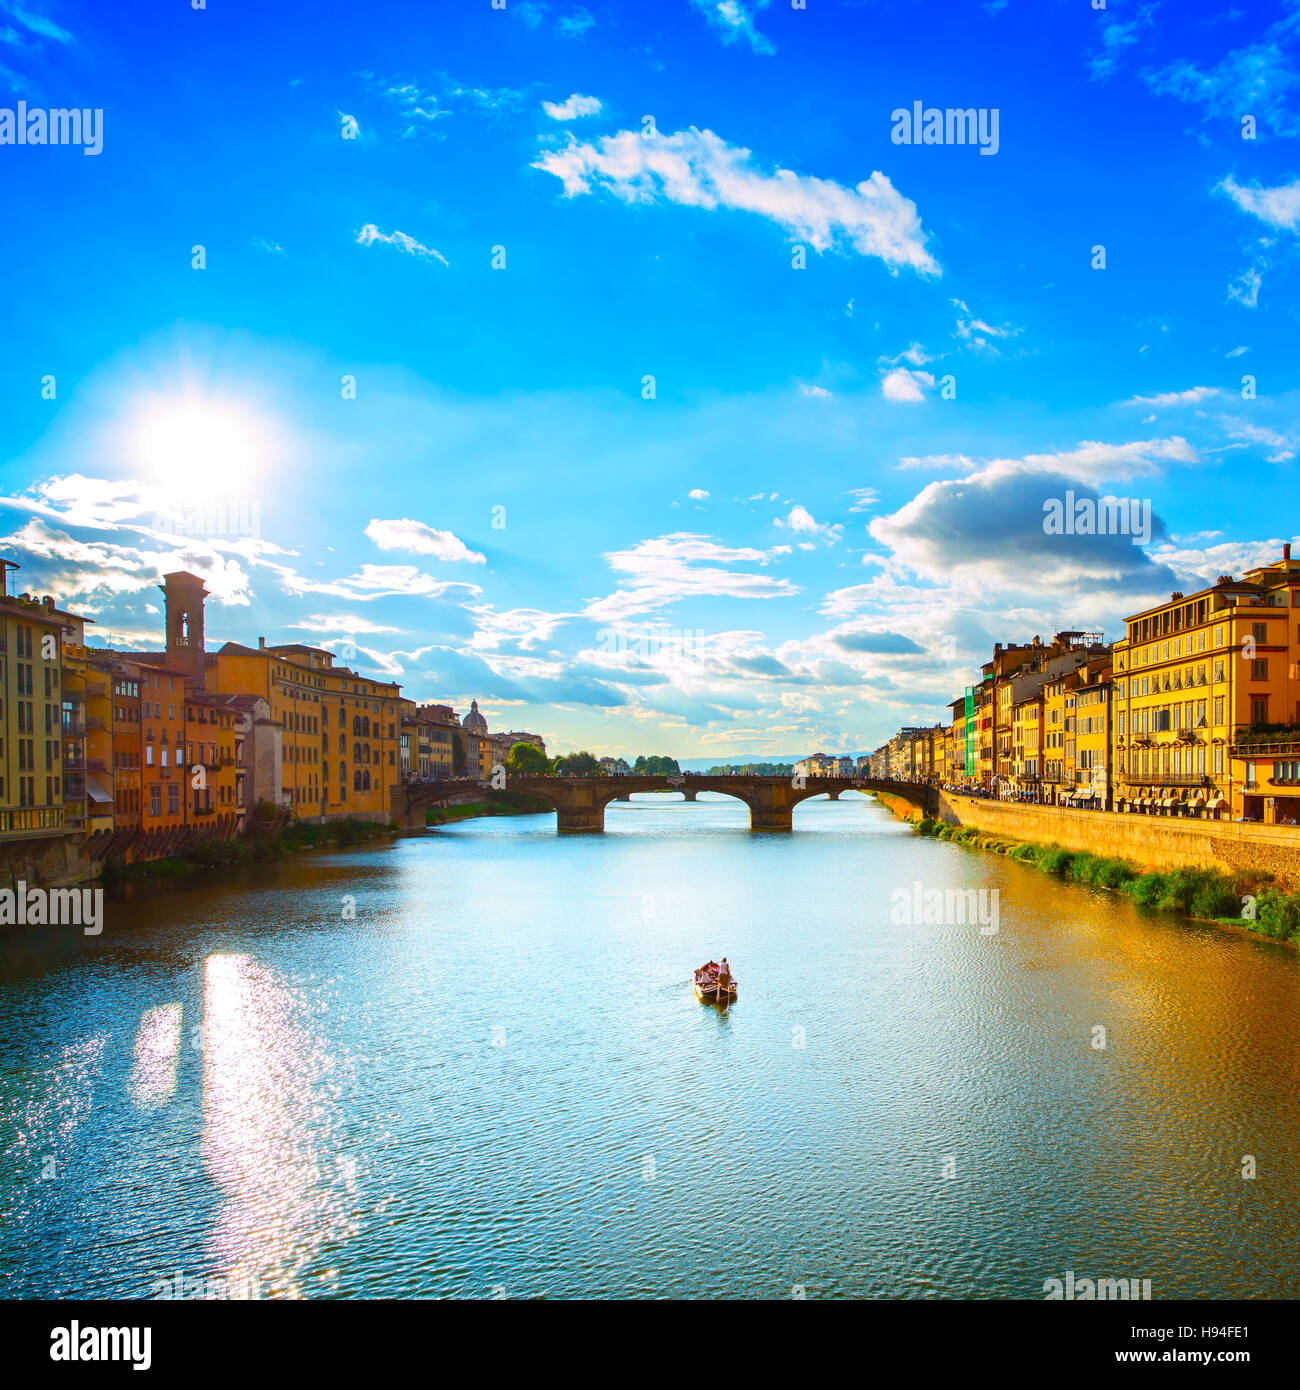 Florenz oder Firenze, Ponte Santa Trinita mittelalterliche Brücke Wahrzeichen am Fluss Arno und ein Boot, Sonnenuntergang Landschaft. Toskana, Italien. Stockfoto